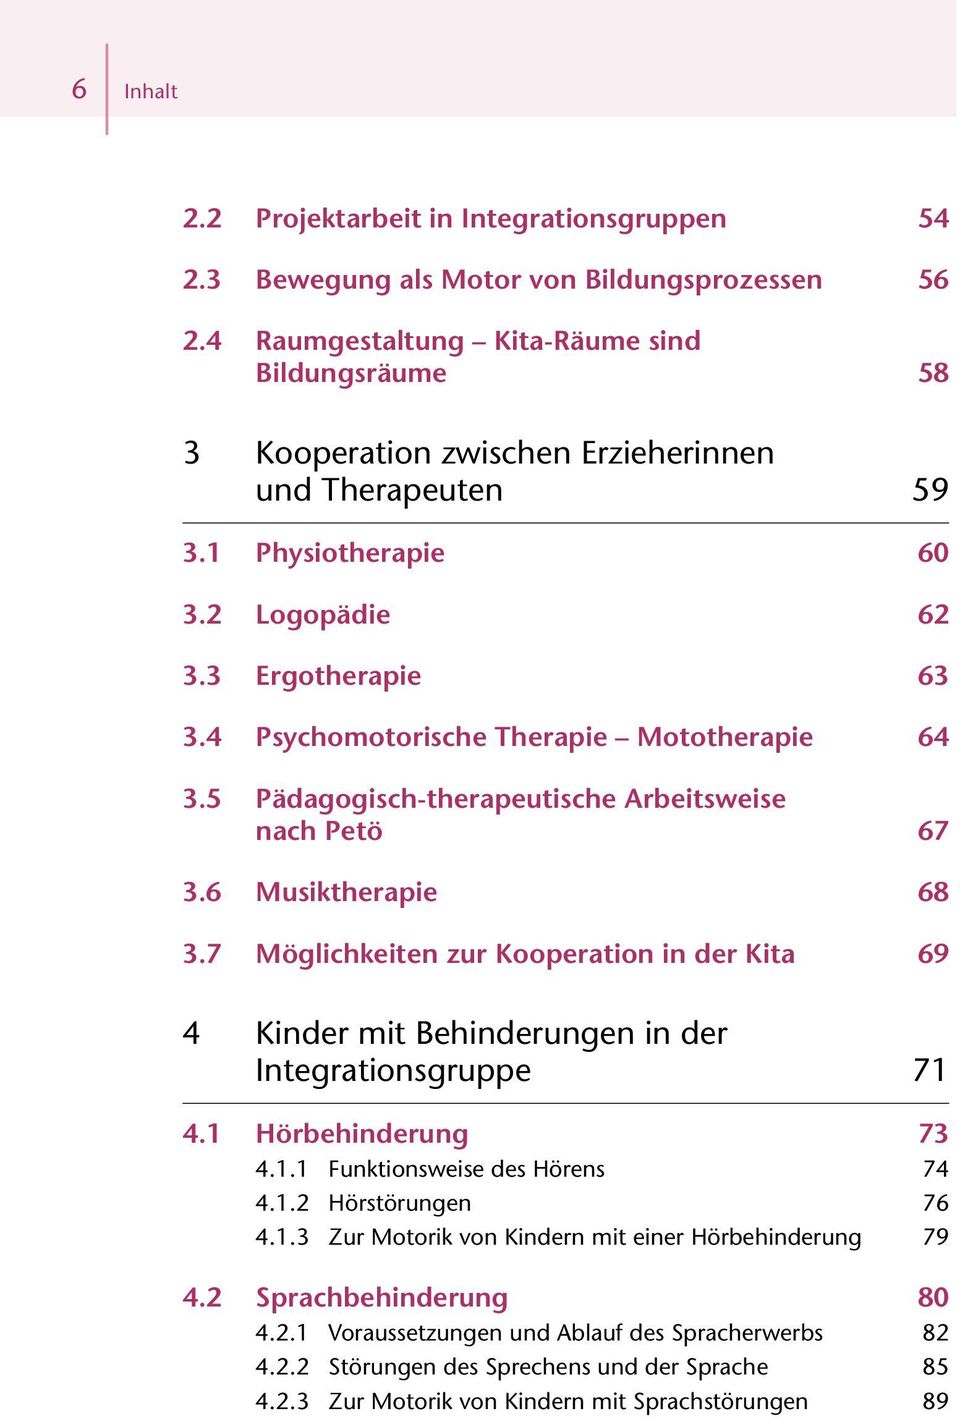 4 Psychomotorische Therapie Mototherapie 64 3.5 Pädagogisch-therapeutische Arbeitsweise nach Petö 67 3.6 Musiktherapie 68 3.